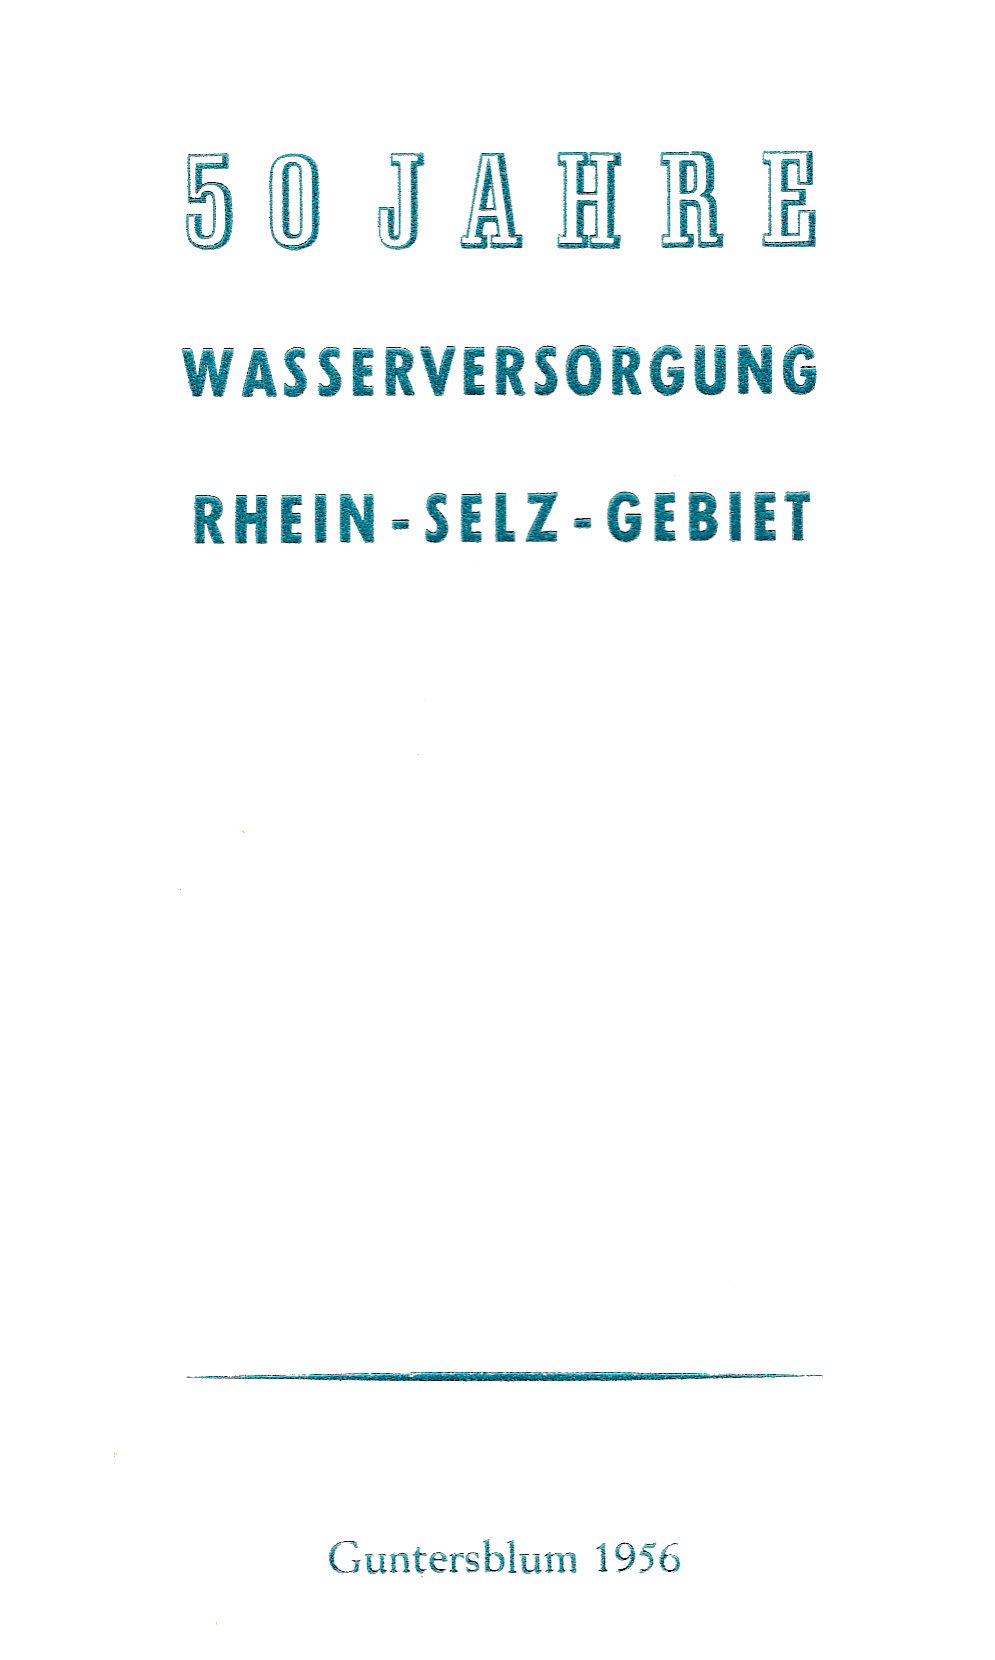 50 Jahre Wasserversorgung Rhein-Selz-Gebiet (Kulturverein Guntersblum CC BY-NC-SA)